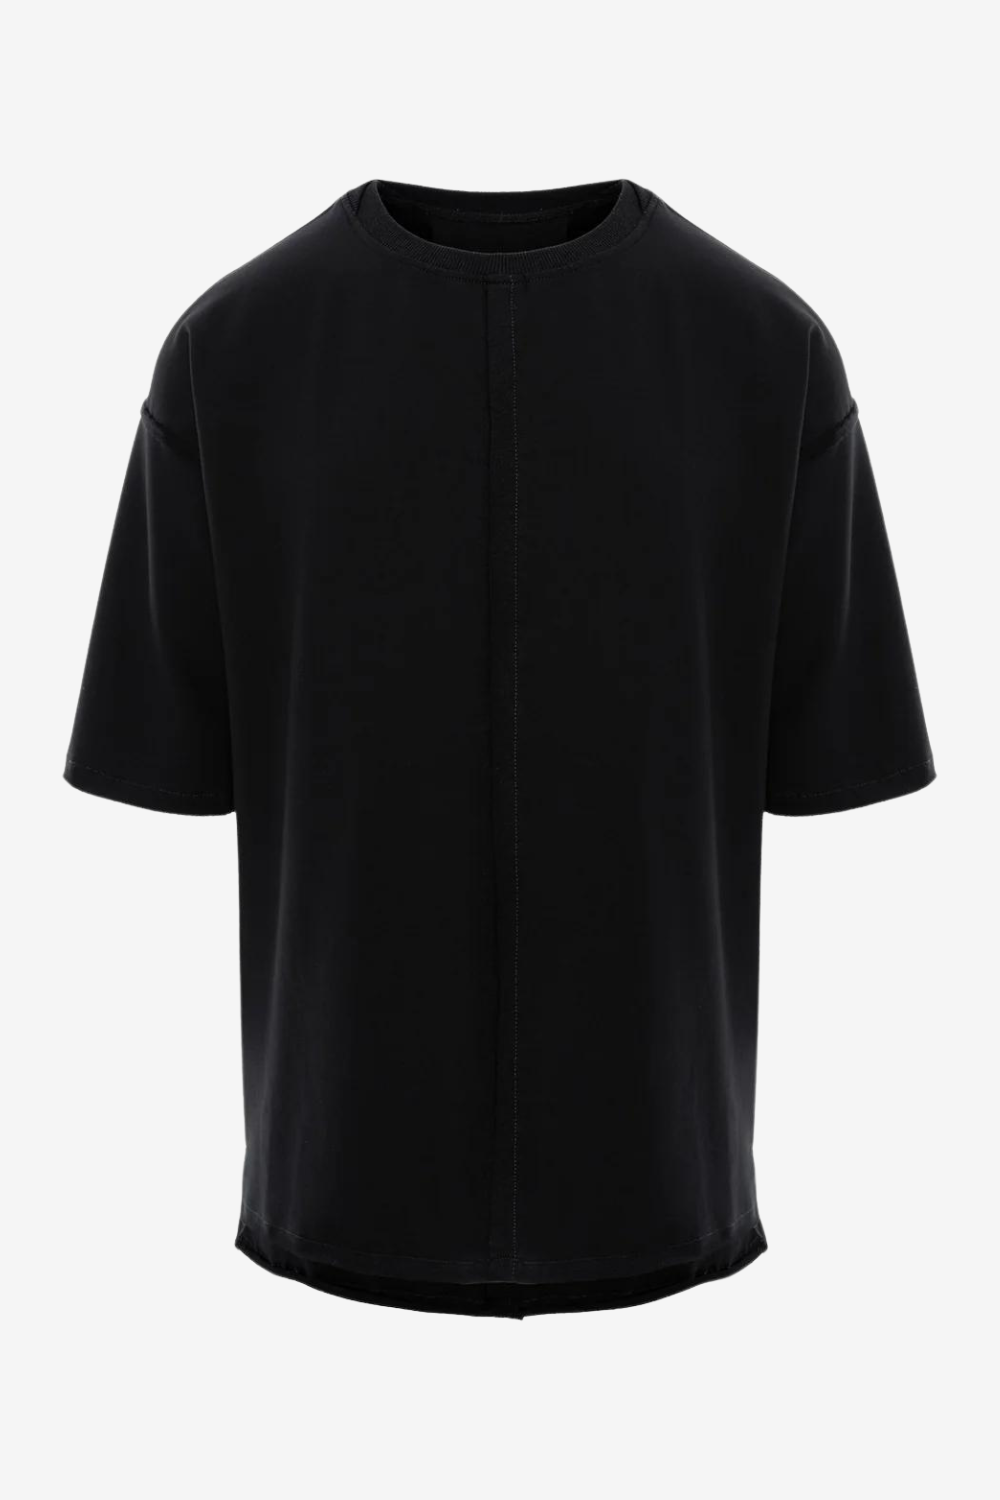 Tricou bărbătesc, negru, bumbac premium, croială oversized, detalii moderne (finișaje crude, cusături decorative).